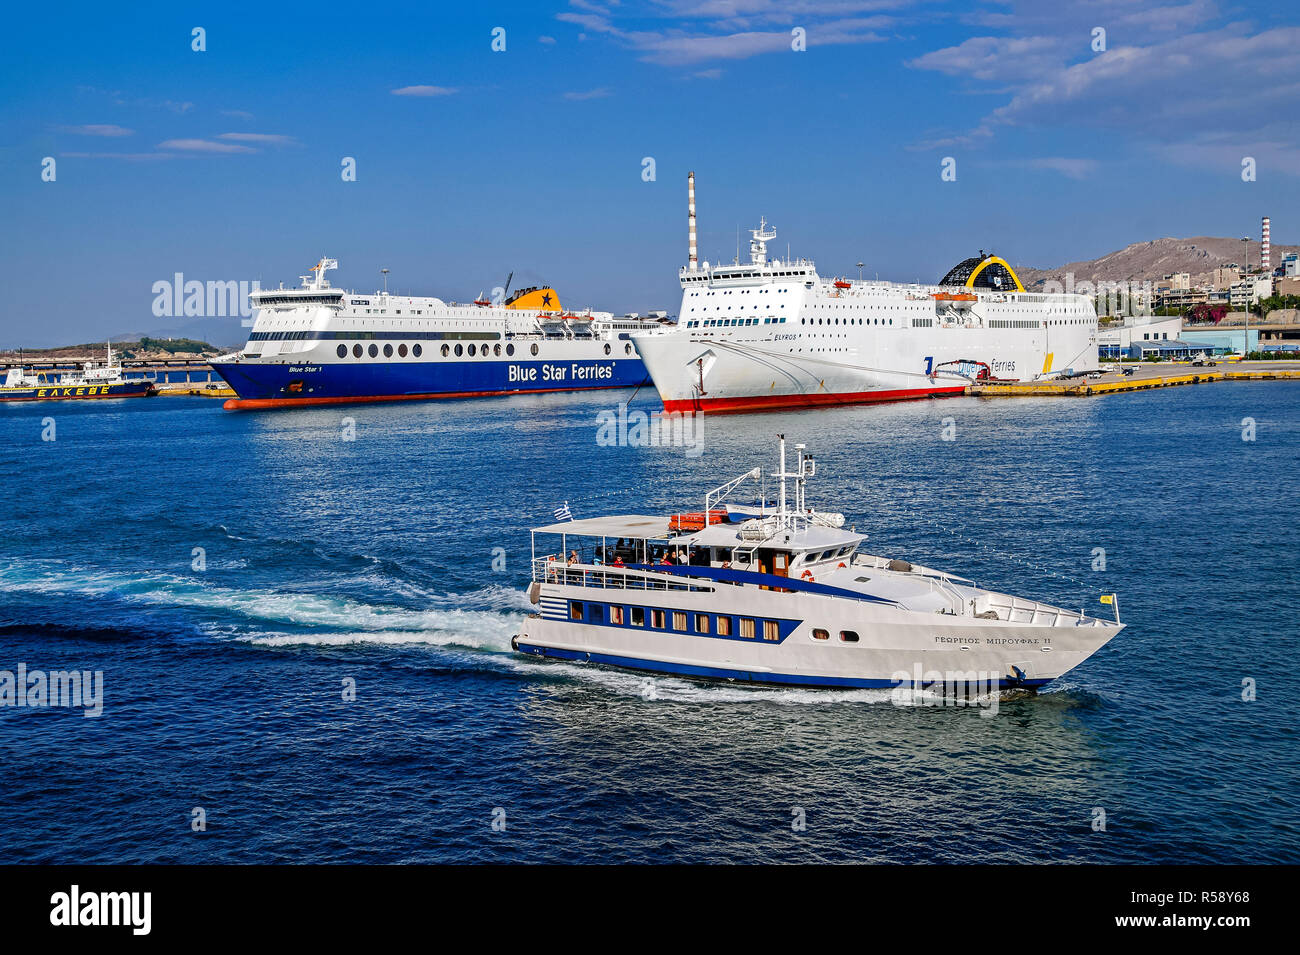 Broufas Schiffe Passagierfähre Georgios Mproufas II mit Blue Star 1&Elyros Hafen von Piräus Athen Griechenland Europa Stockfoto